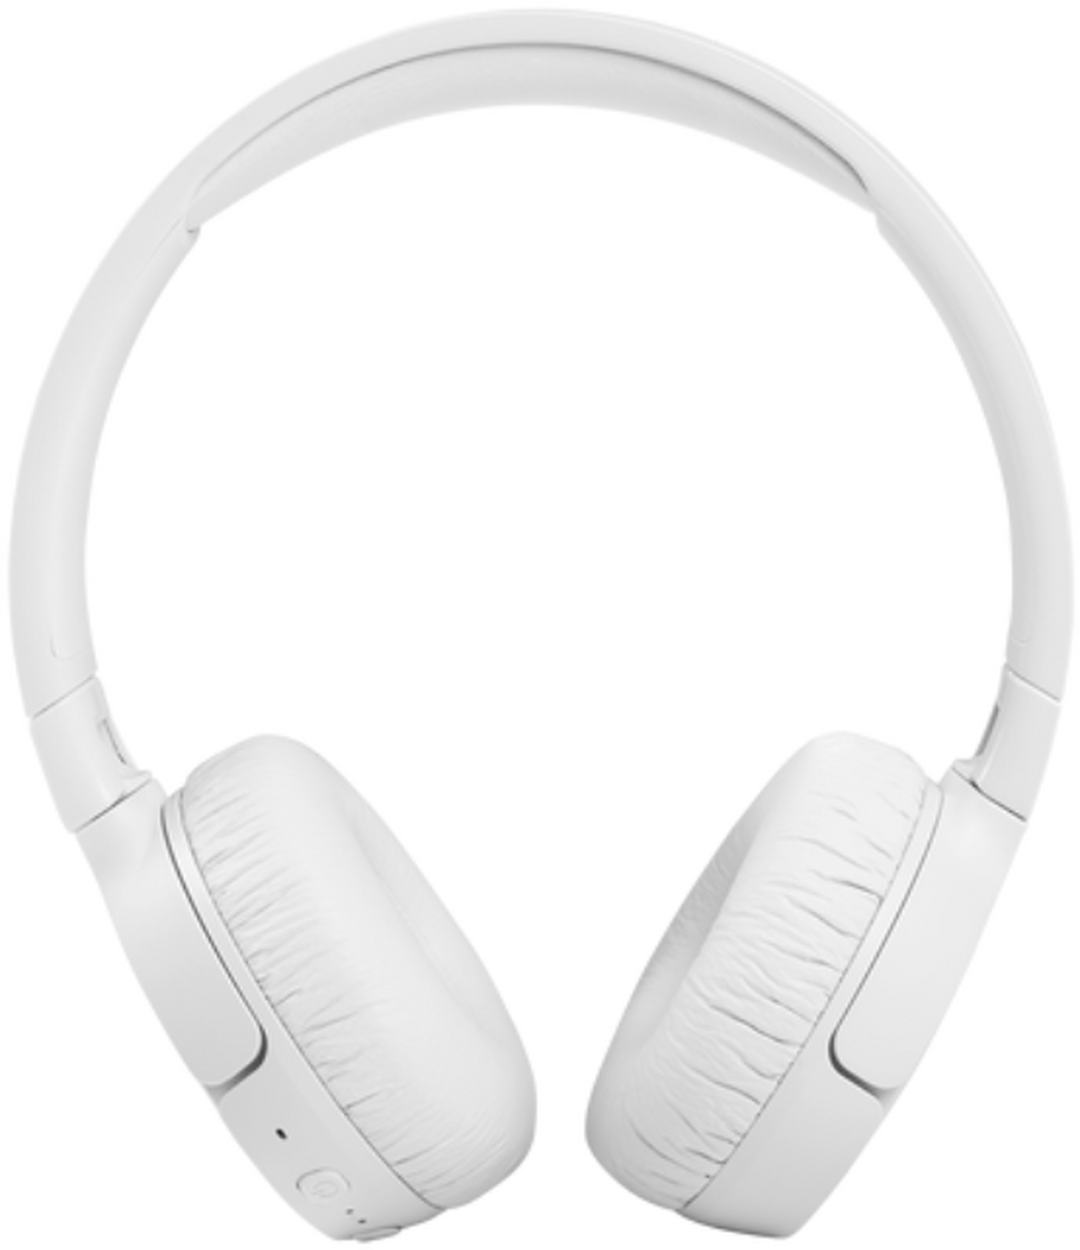 سماعة تون 660 ان سي مع تقنية إلغاء الضوضاء من جي بي ال - أبيض